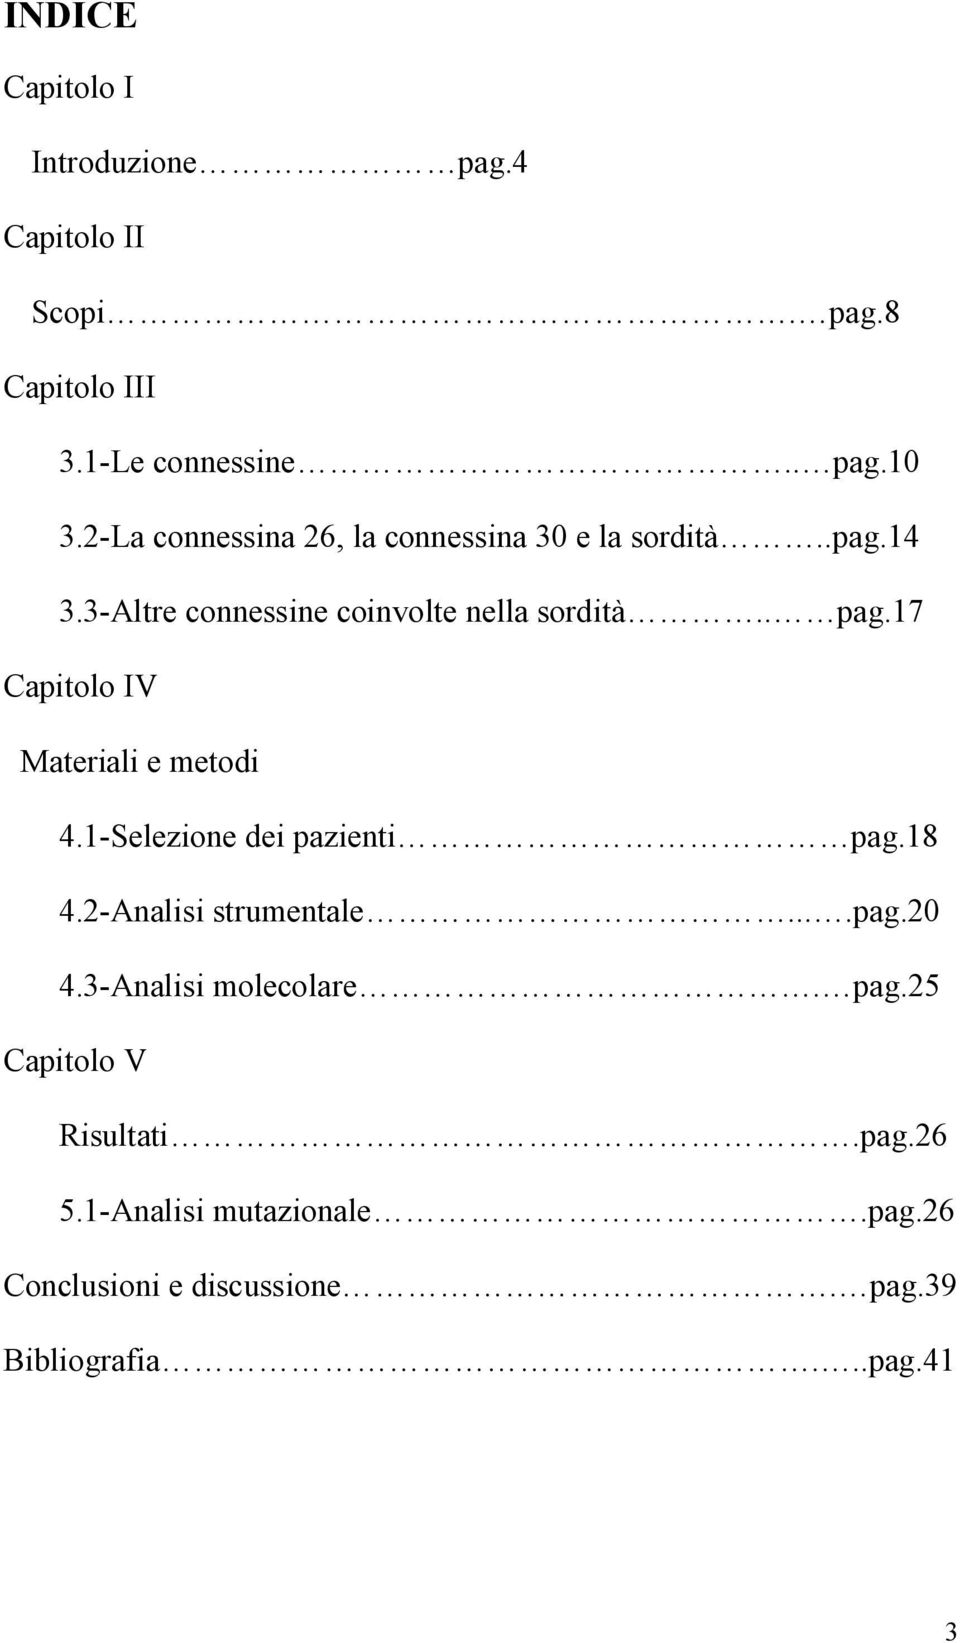 17 Capitolo IV Materiali e metodi 4.1-Selezione dei pazienti pag.18 4.2-Analisi strumentale....pag.20 4.